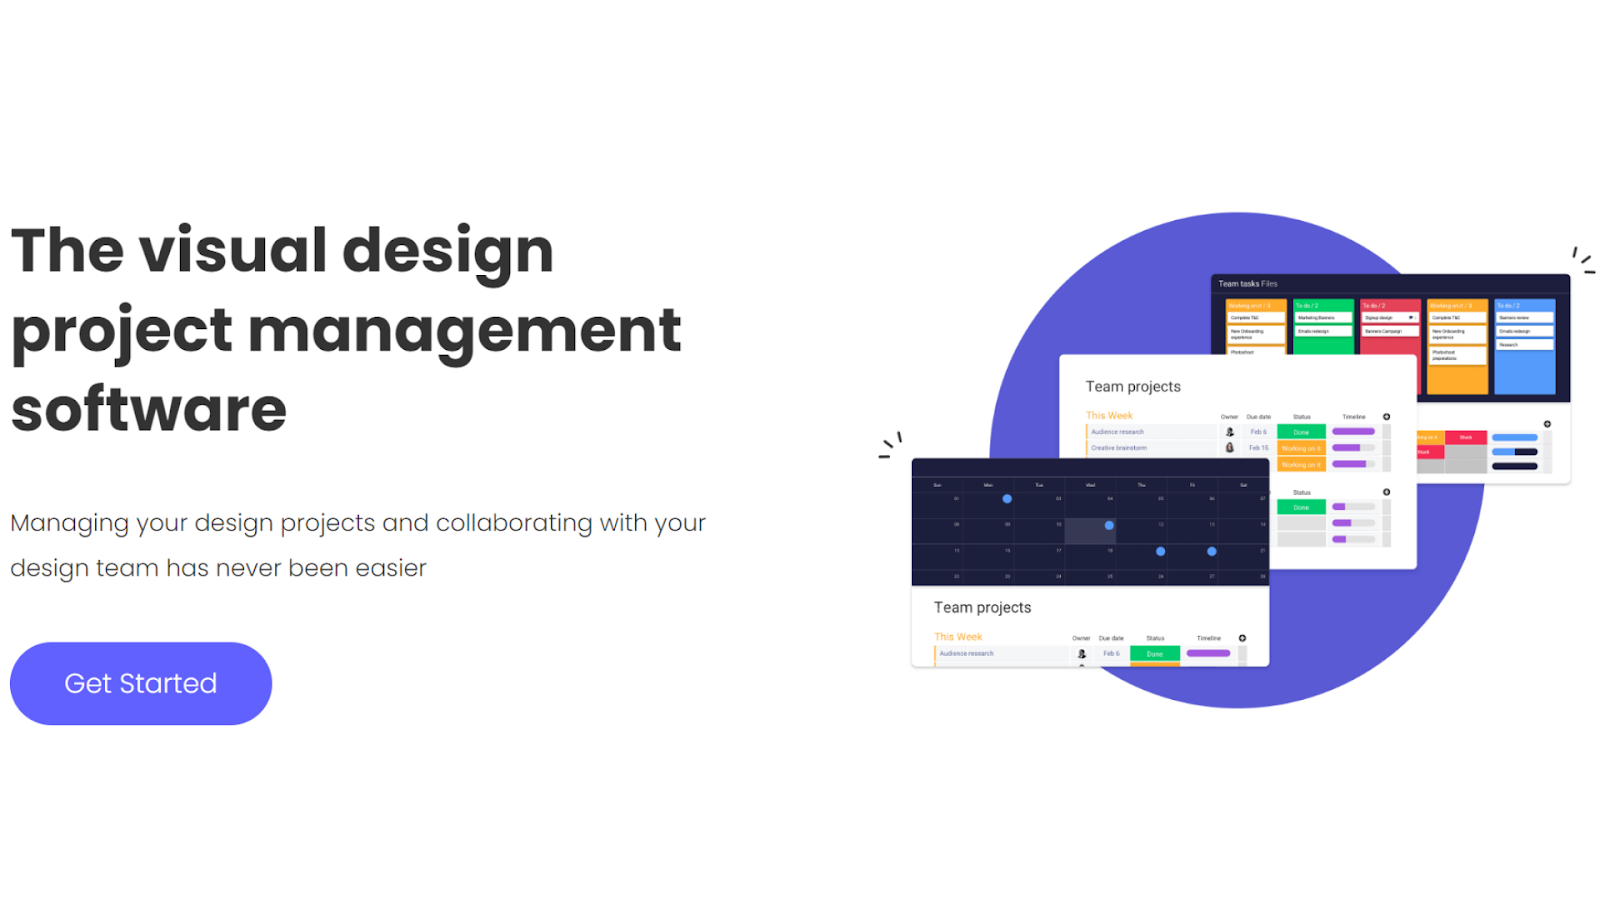 Monday.com's website for design teams